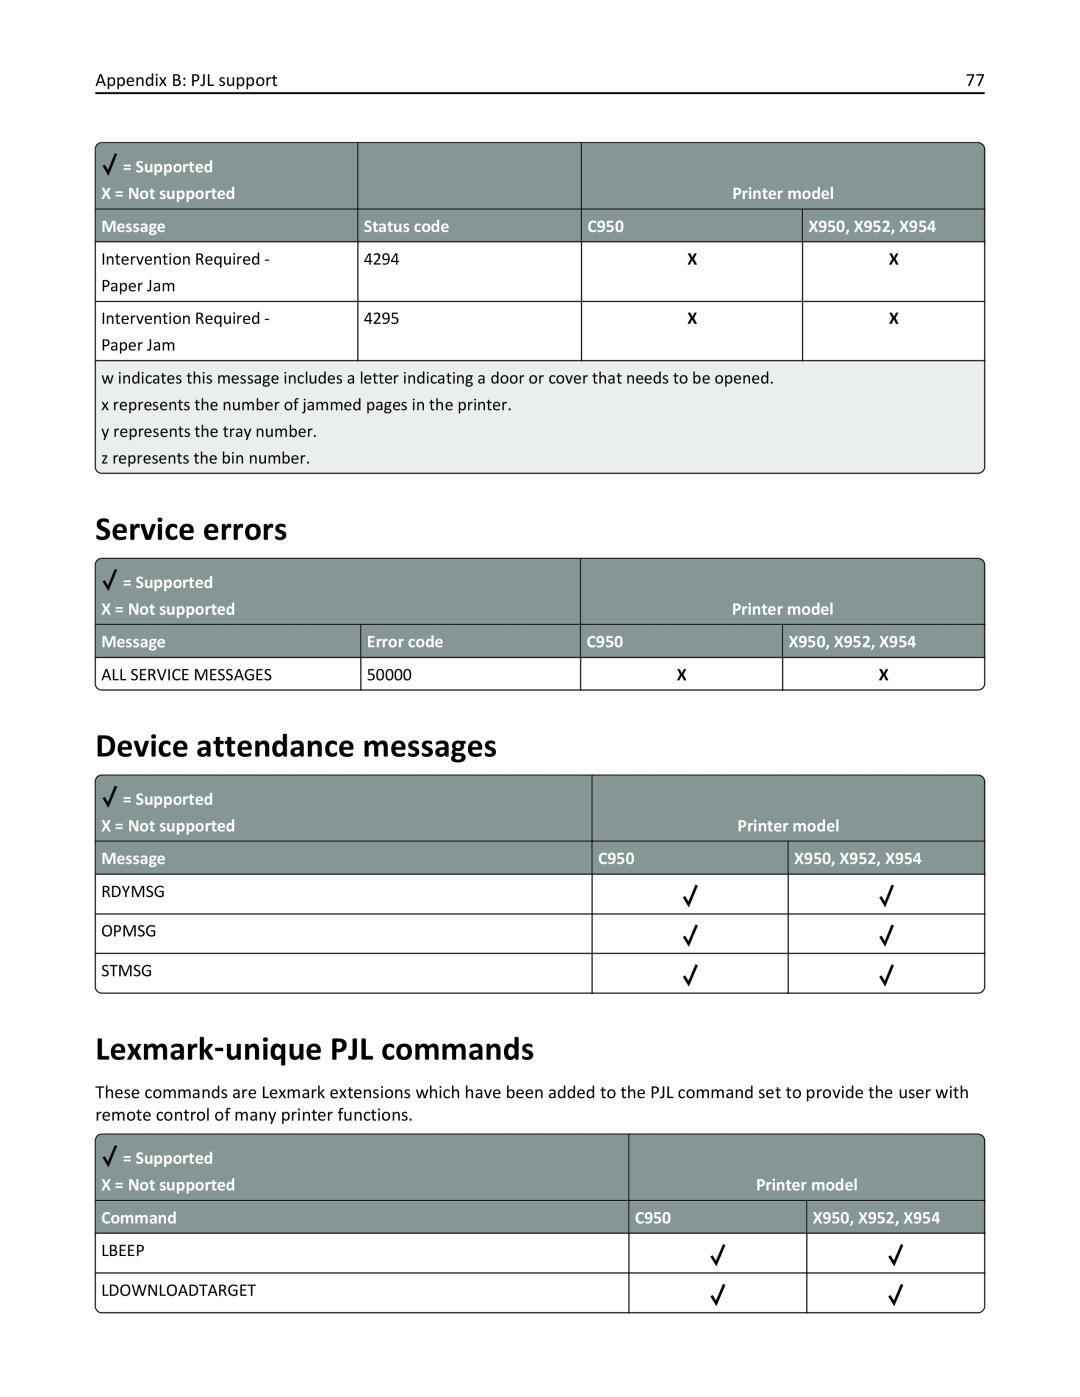 Lexmark 954DE, 952DE, 950DE Service errors, Device attendance messages, Lexmark‑unique PJL commands, Appendix B PJL support 